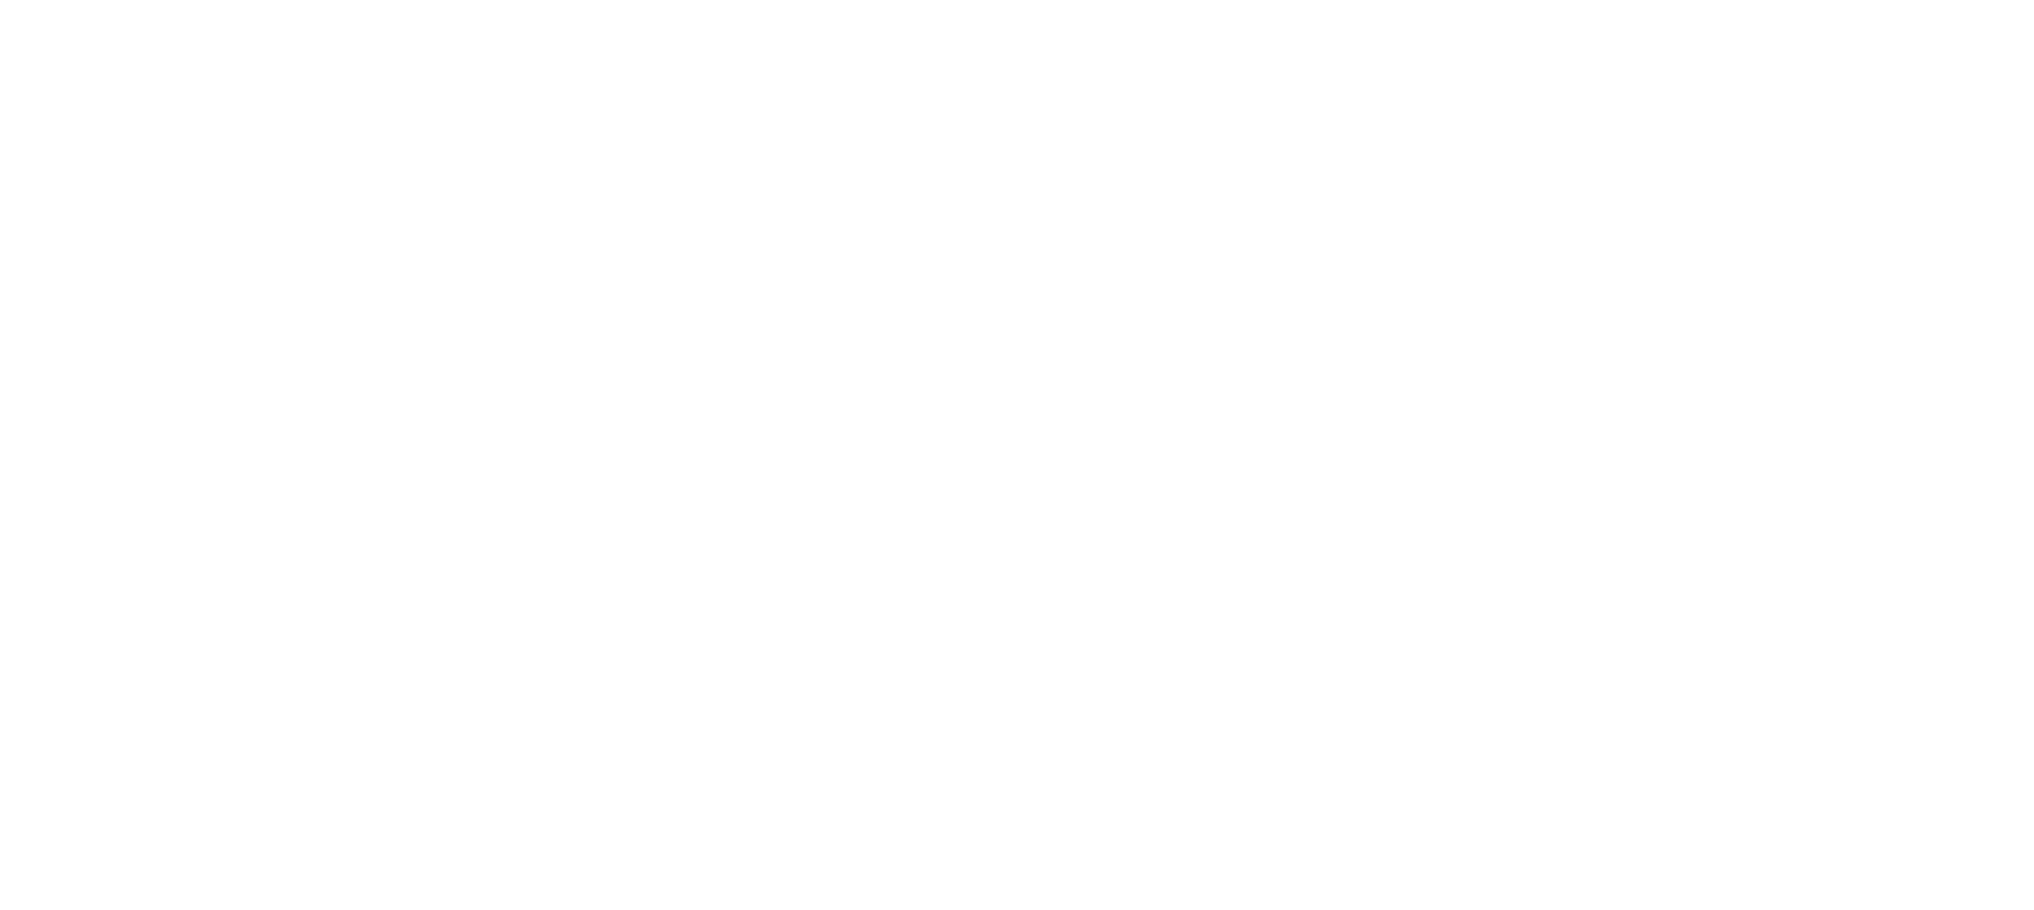 神居-logo